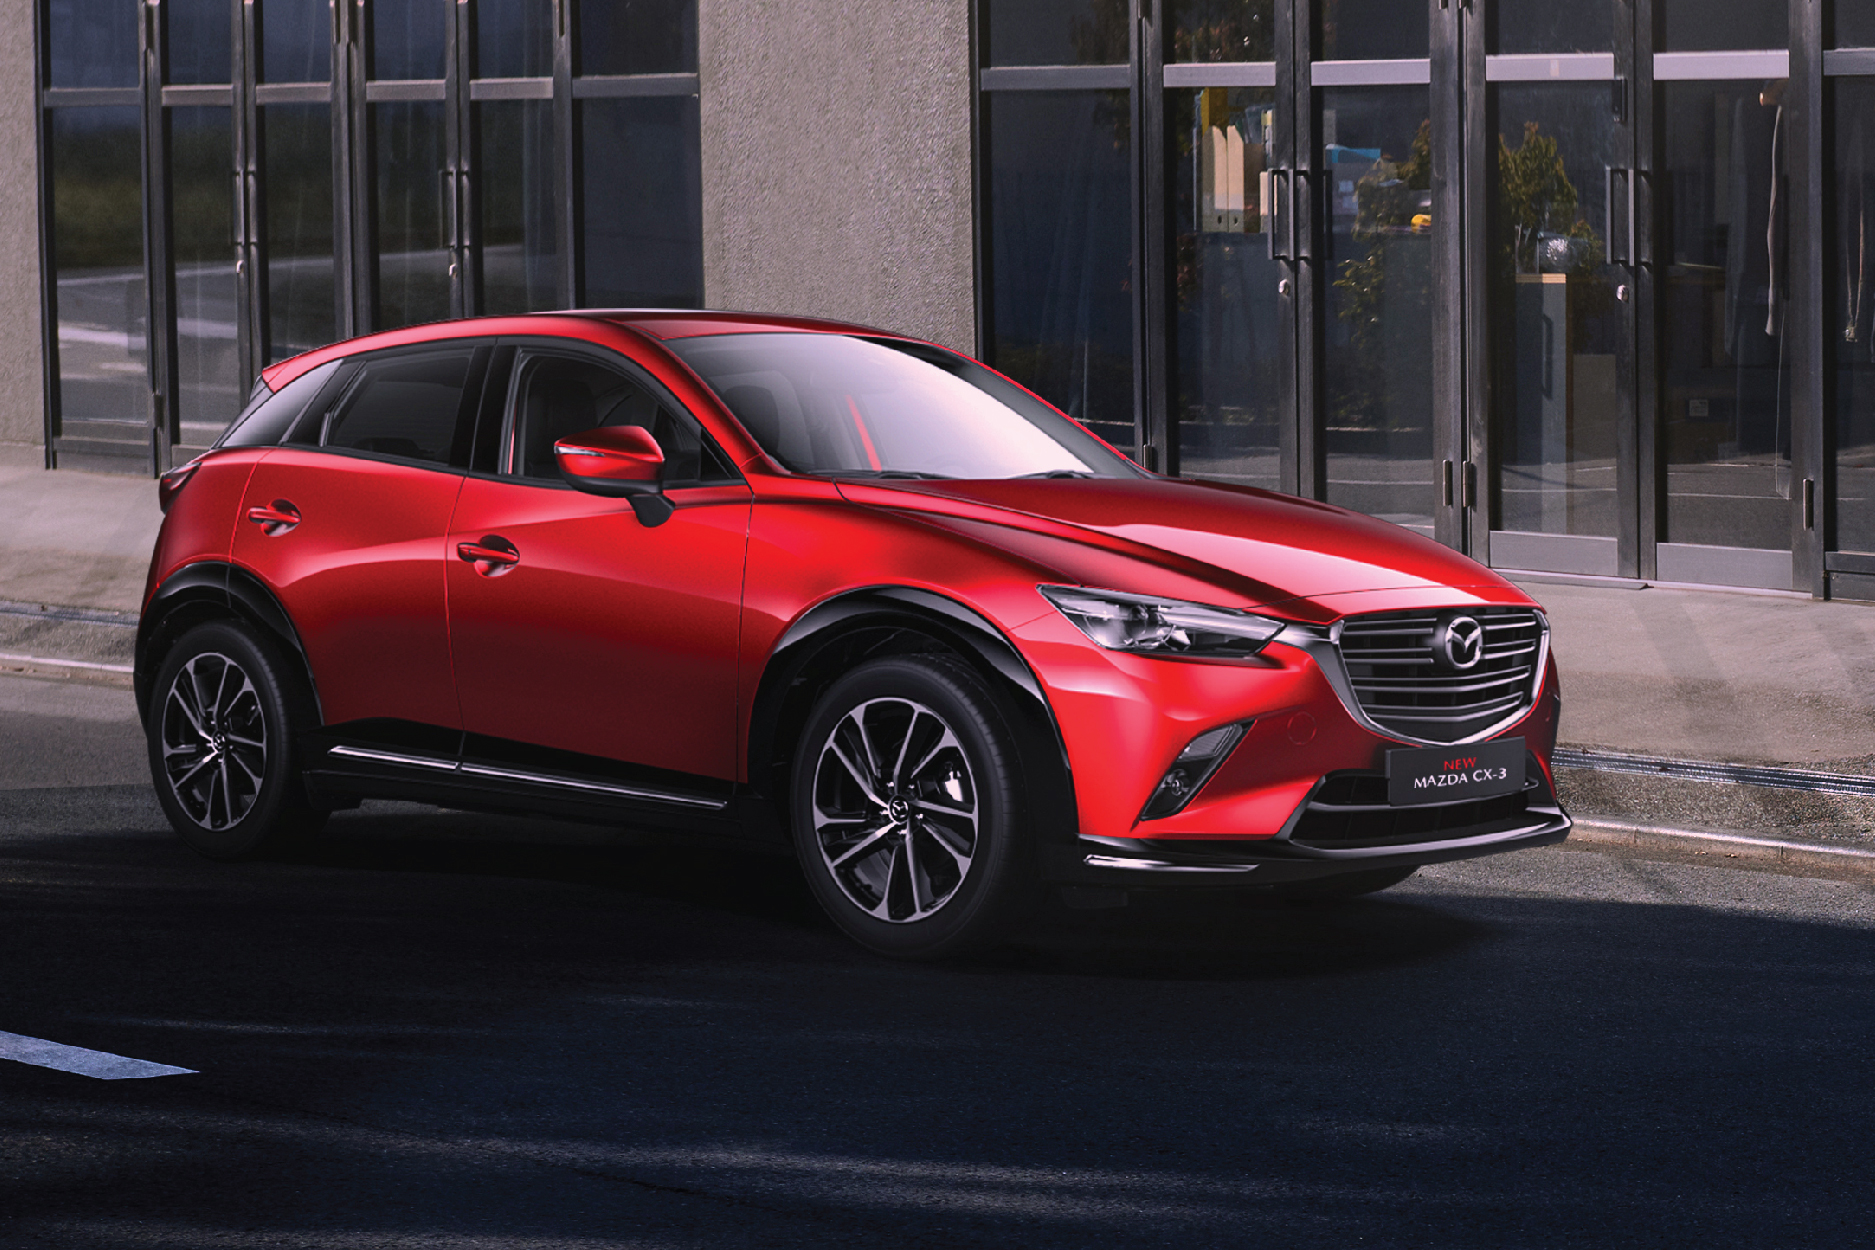 New Mazda CX-3 giải quyết ‘bài toán’ chọn SUV đô thị tiện nghi, an toàn - Ảnh 1.